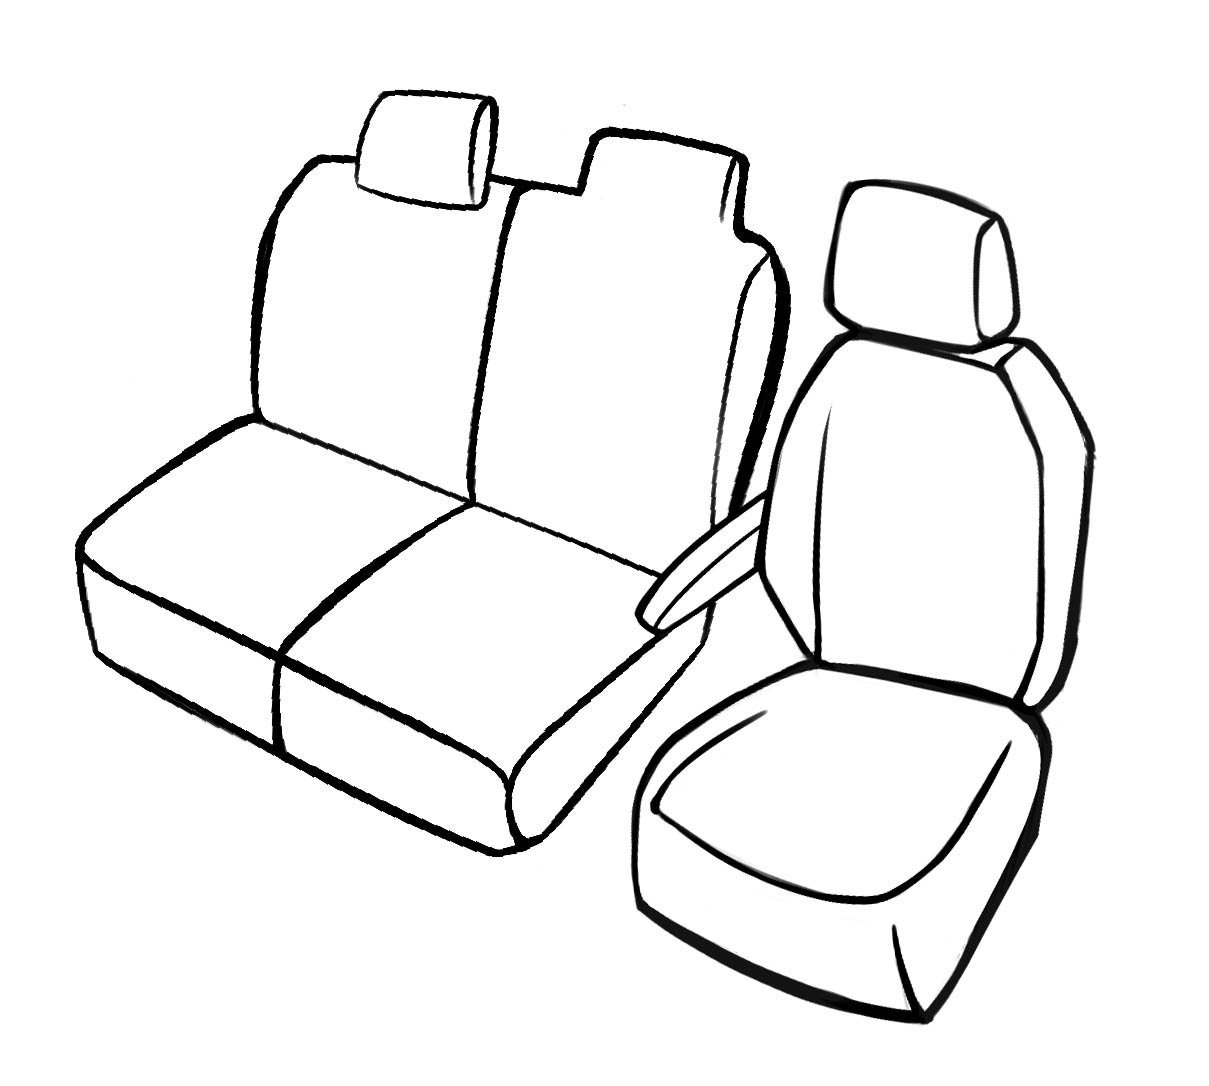 Premium Housse de siège pour Peugeot Partner 09/2018- auj., 1 housse de siège simple, 1 couverture de banc double